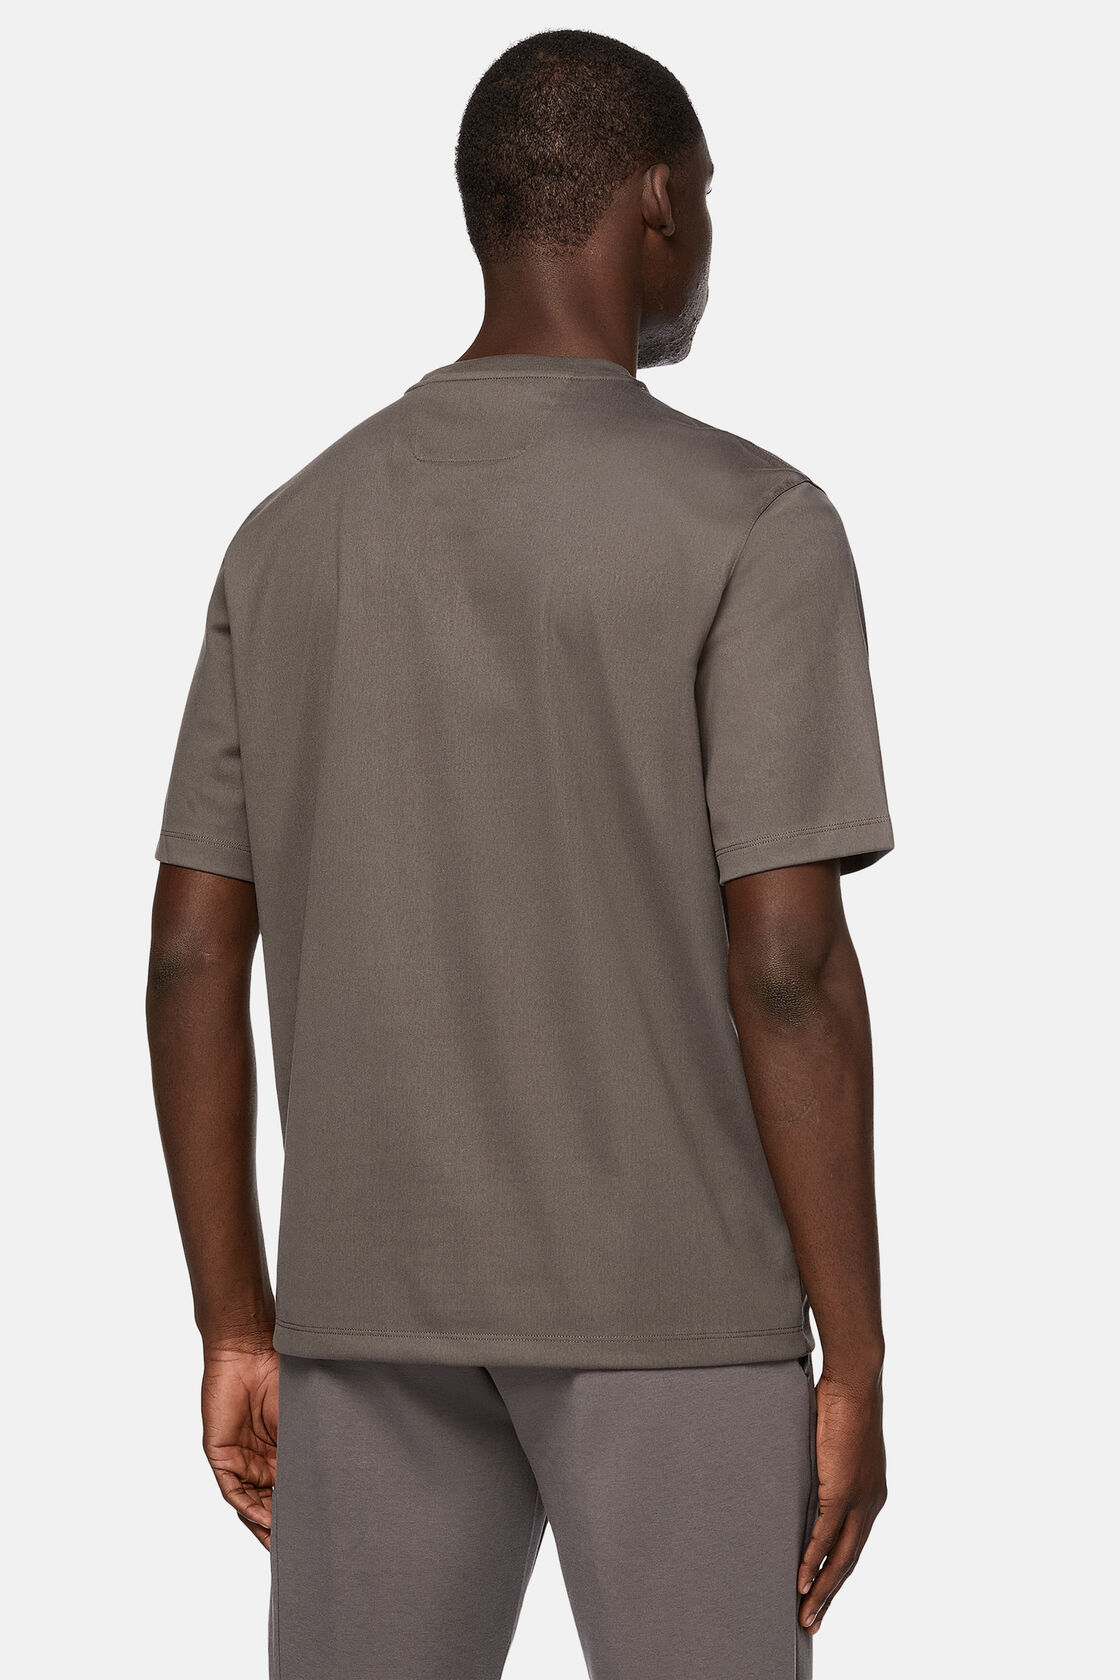 Κοντομάνικο μπλουζάκι από ζέρσεϊ υψηλών επιδόσεων, Dark Grey, hi-res